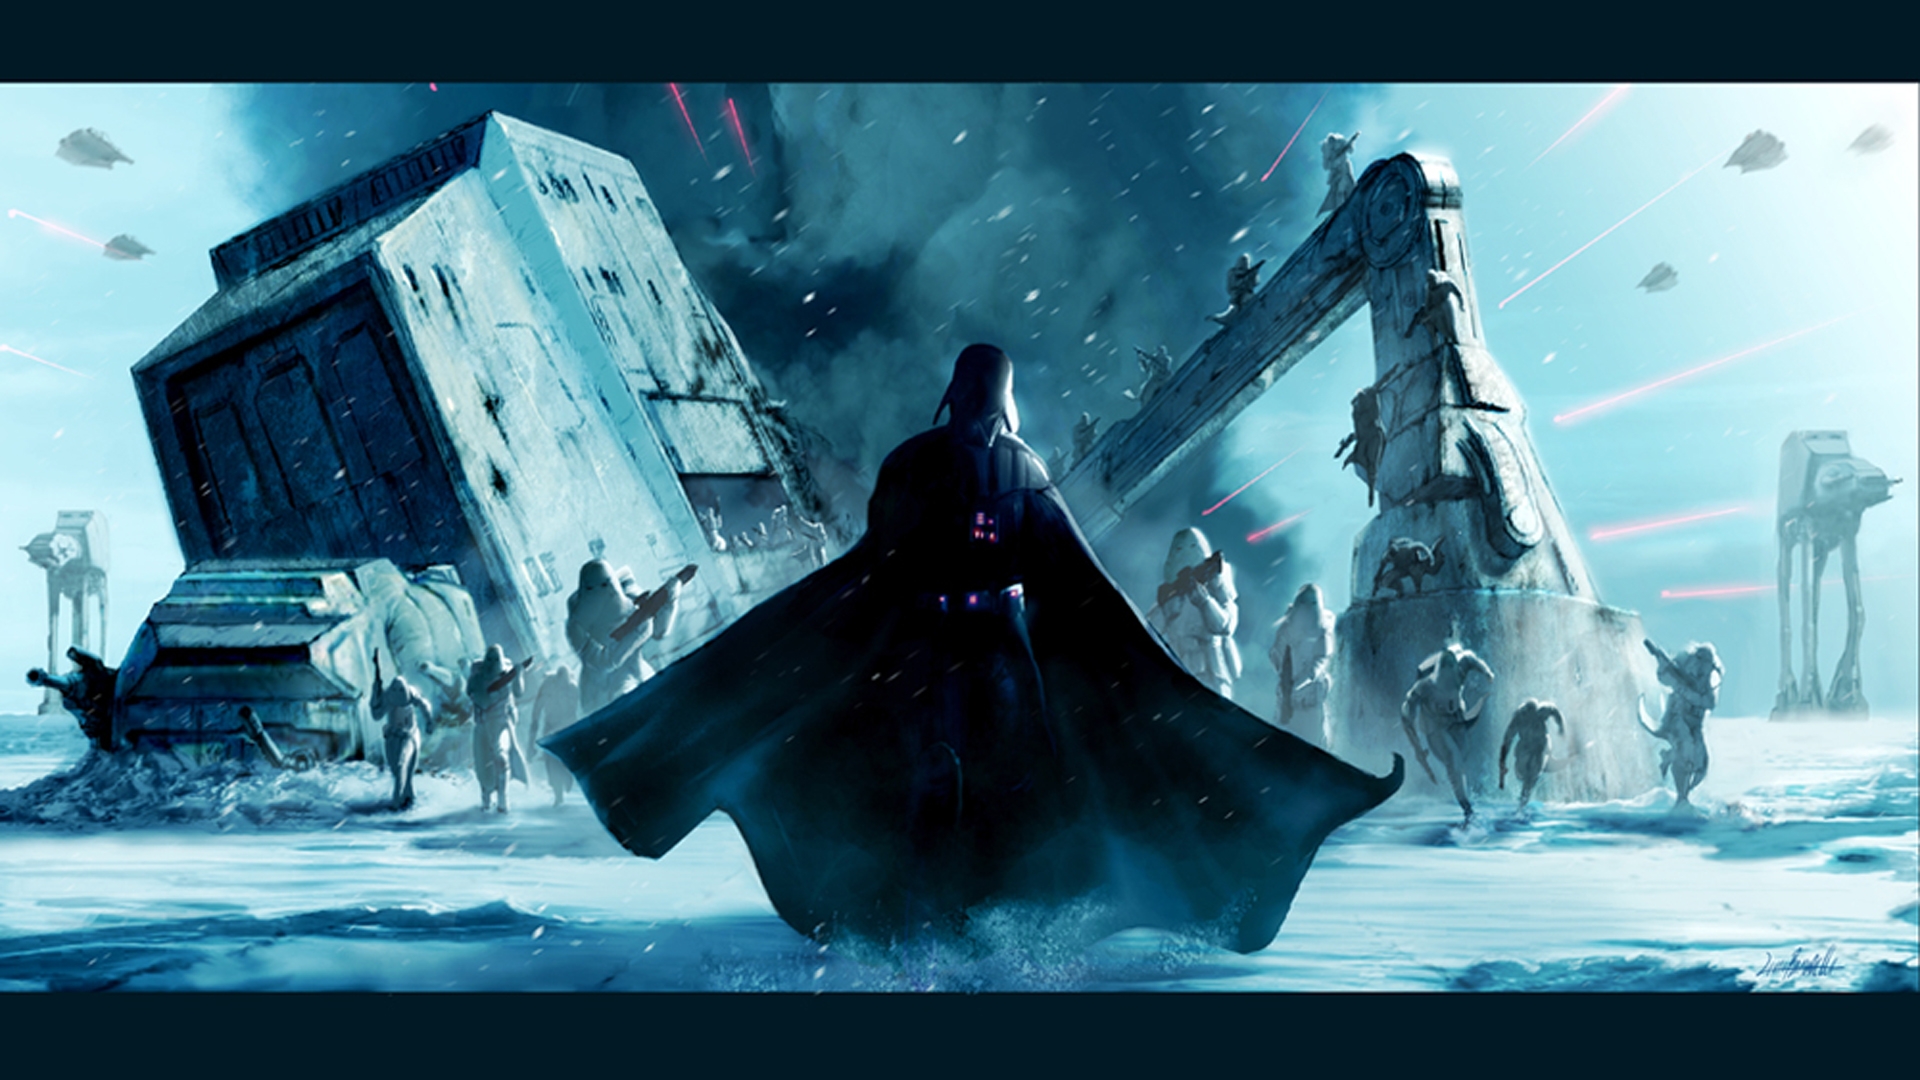 Star Wars Darth Vader Hoth HD Wallpaper FullHDwpp Full